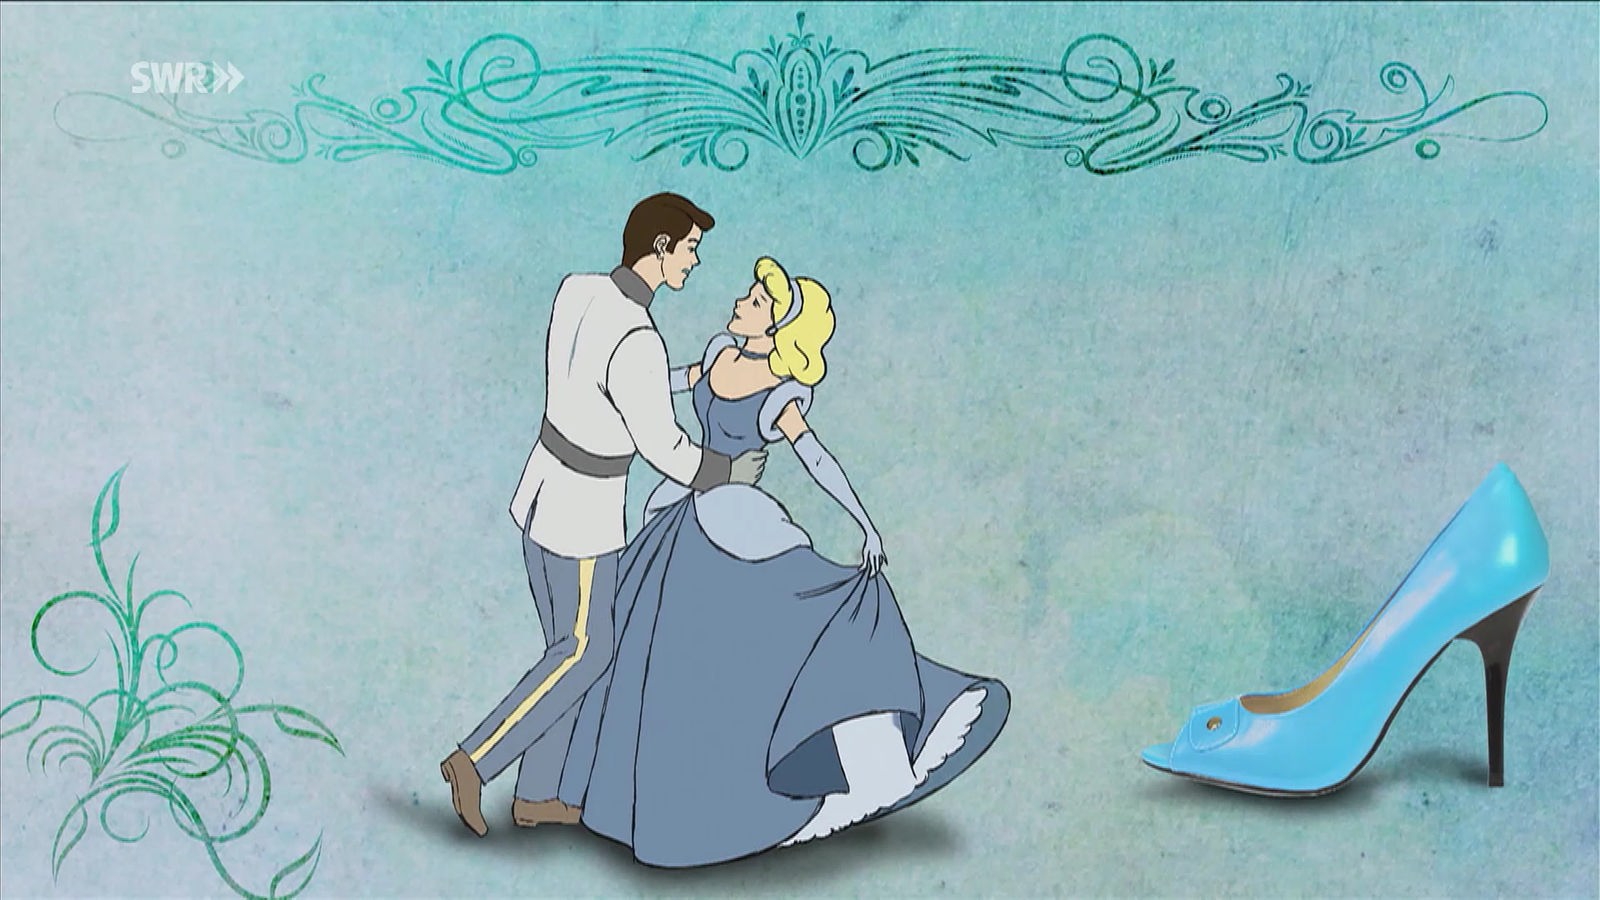 Zeichnung: Prinz und Prinzessin beim Tanz. Rechts davon ist ein überdimensionaler blauer Stiletto abgebildet.